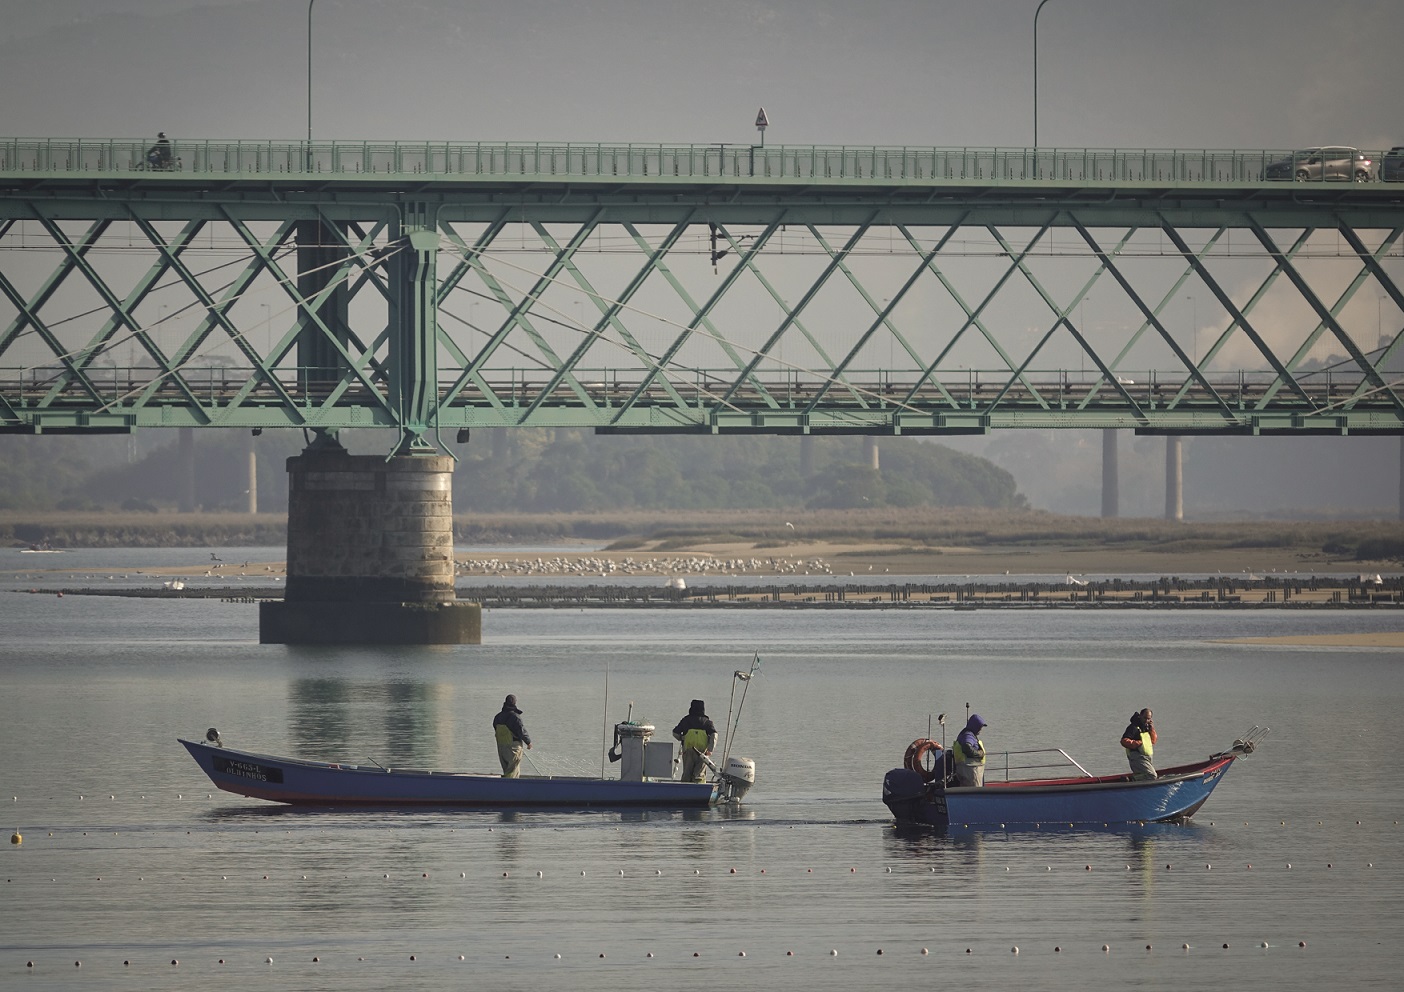 Barcos no rio. Foto: C. M. Viana do Castelo